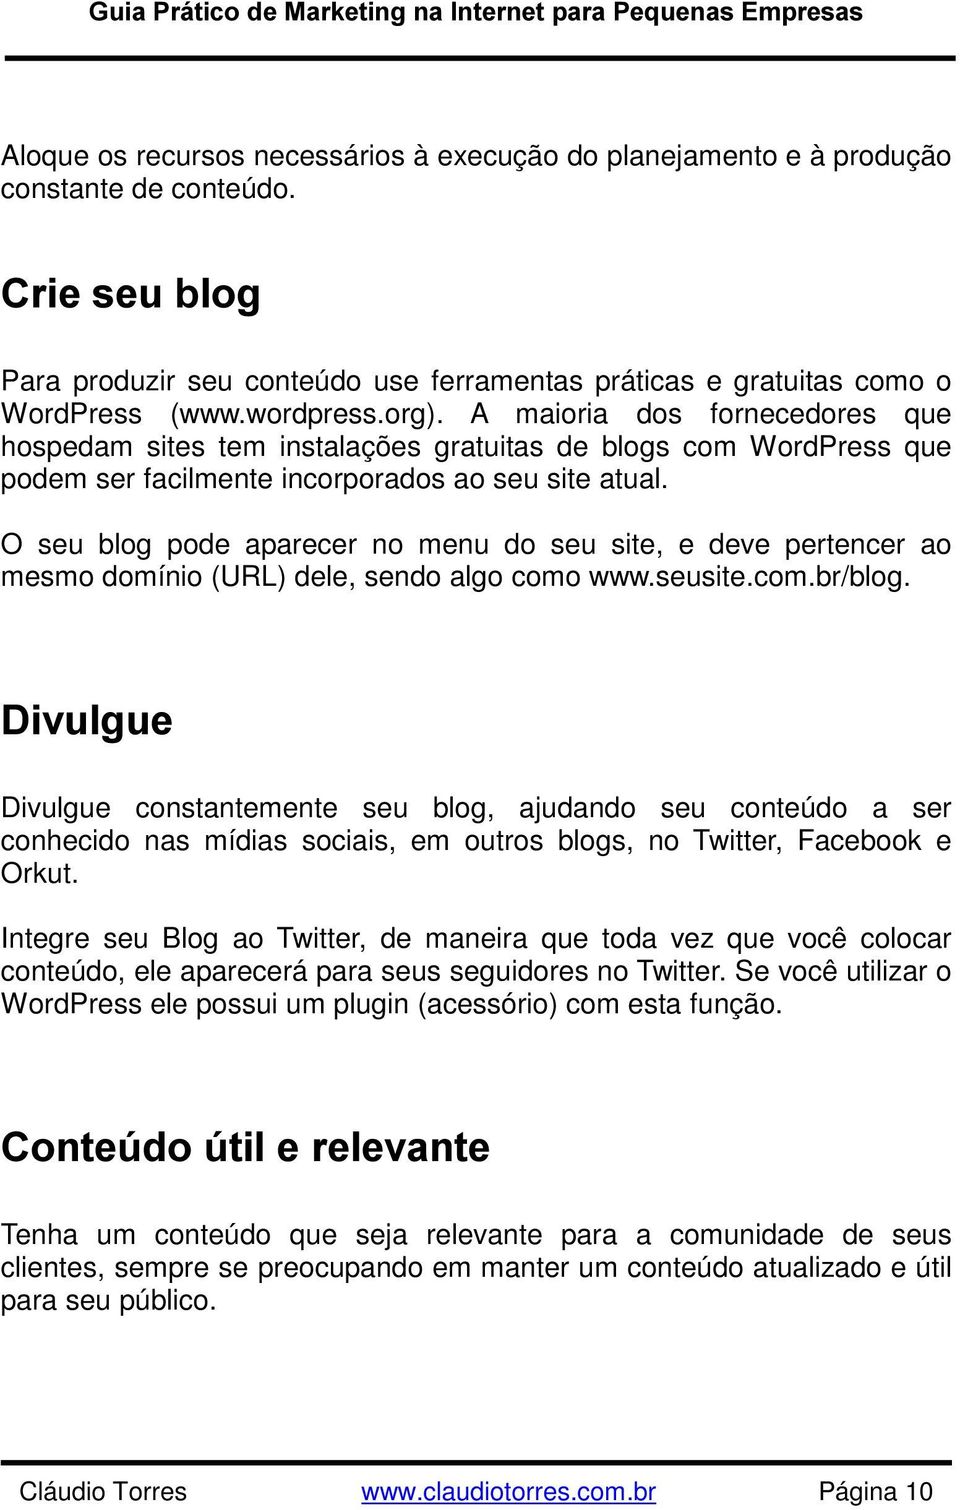 O seu blog pode aparecer no menu do seu site, e deve pertencer ao mesmo domínio (URL) dele, sendo algo como www.seusite.com.br/blog.